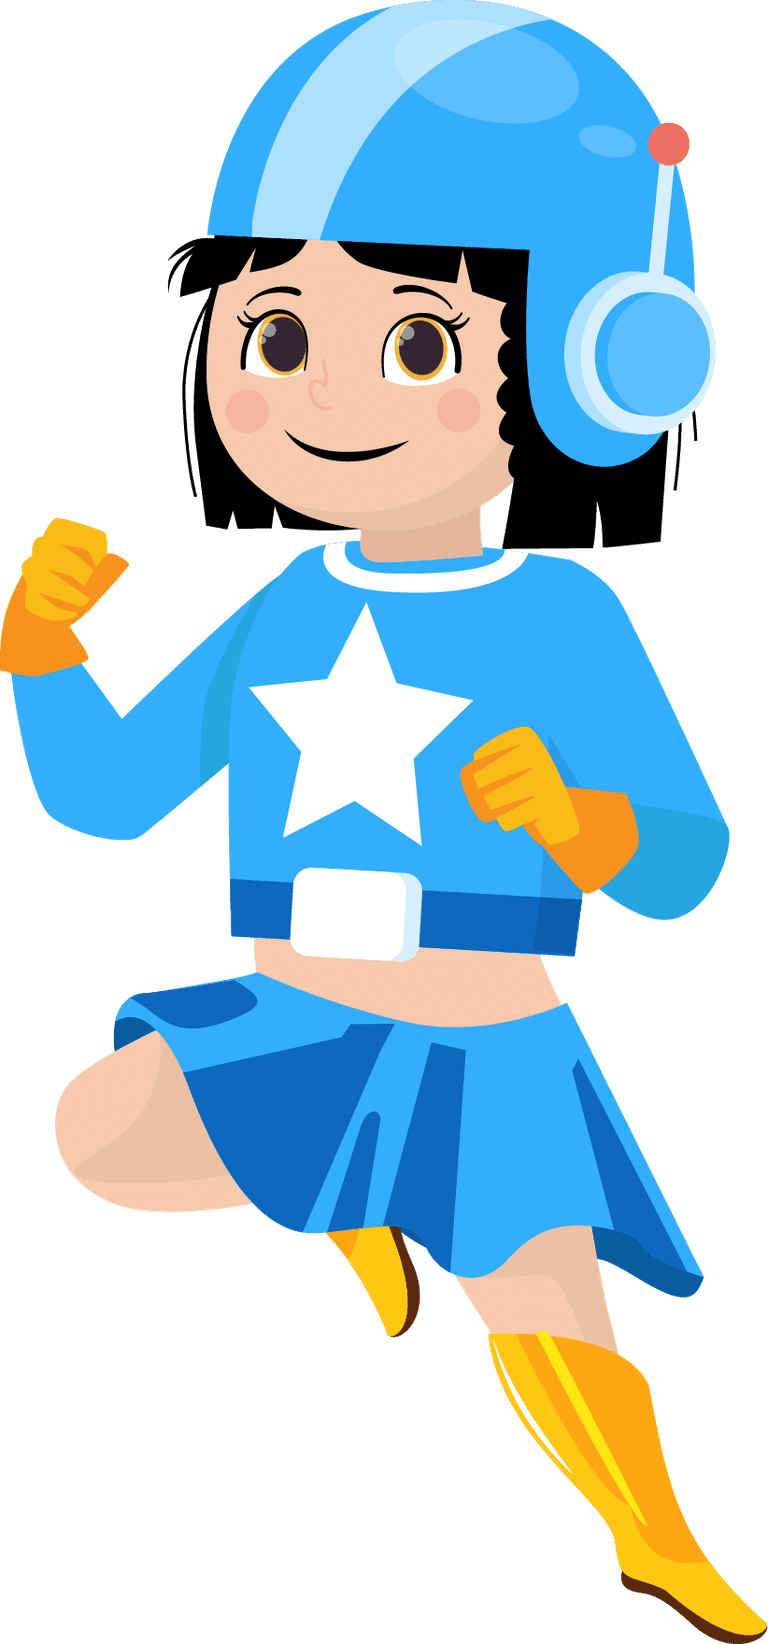 super hero hero kids icons cute cartoon characters sketch